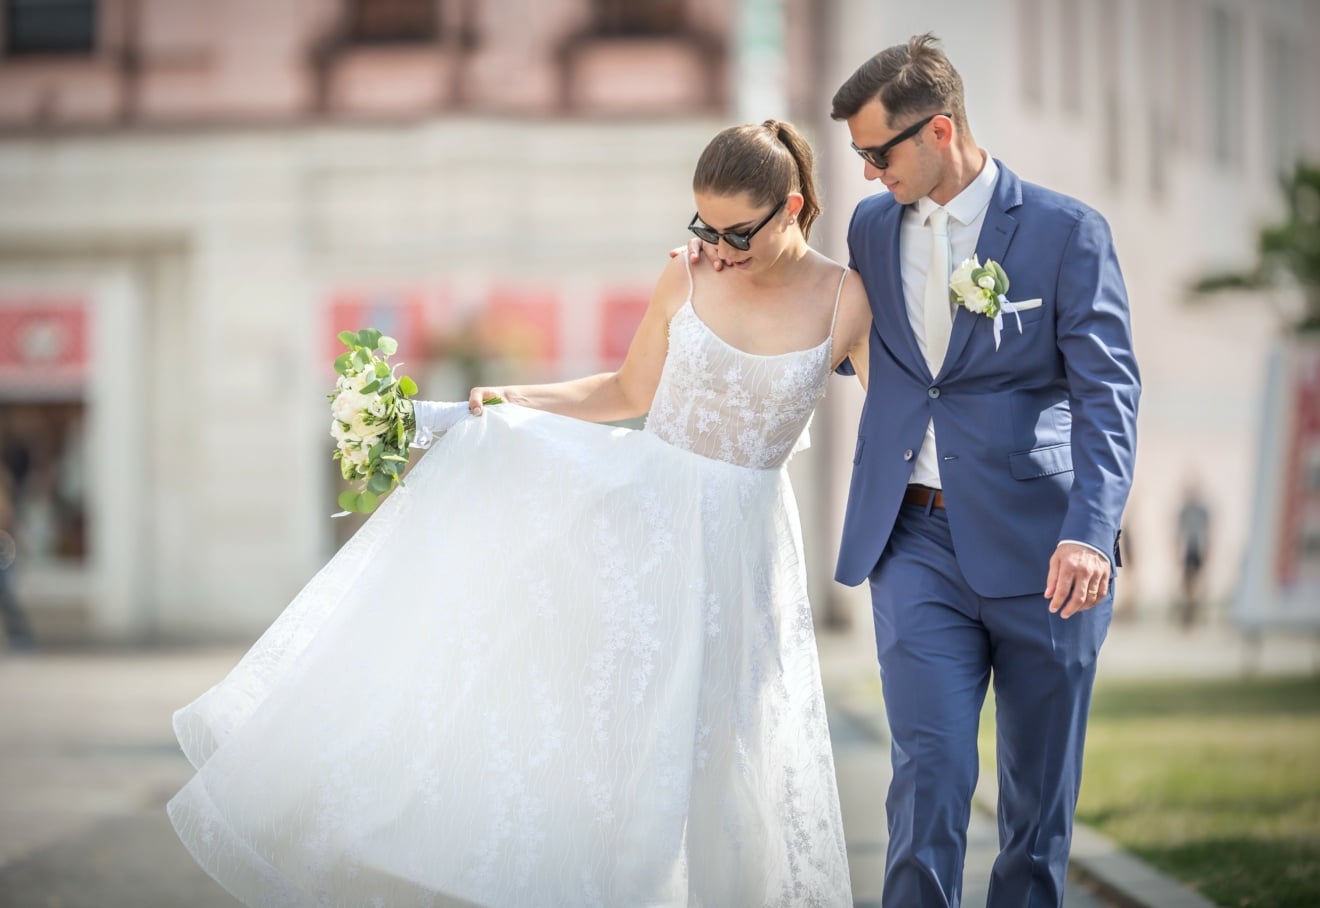 Comment porter un costume pour un mariage ?